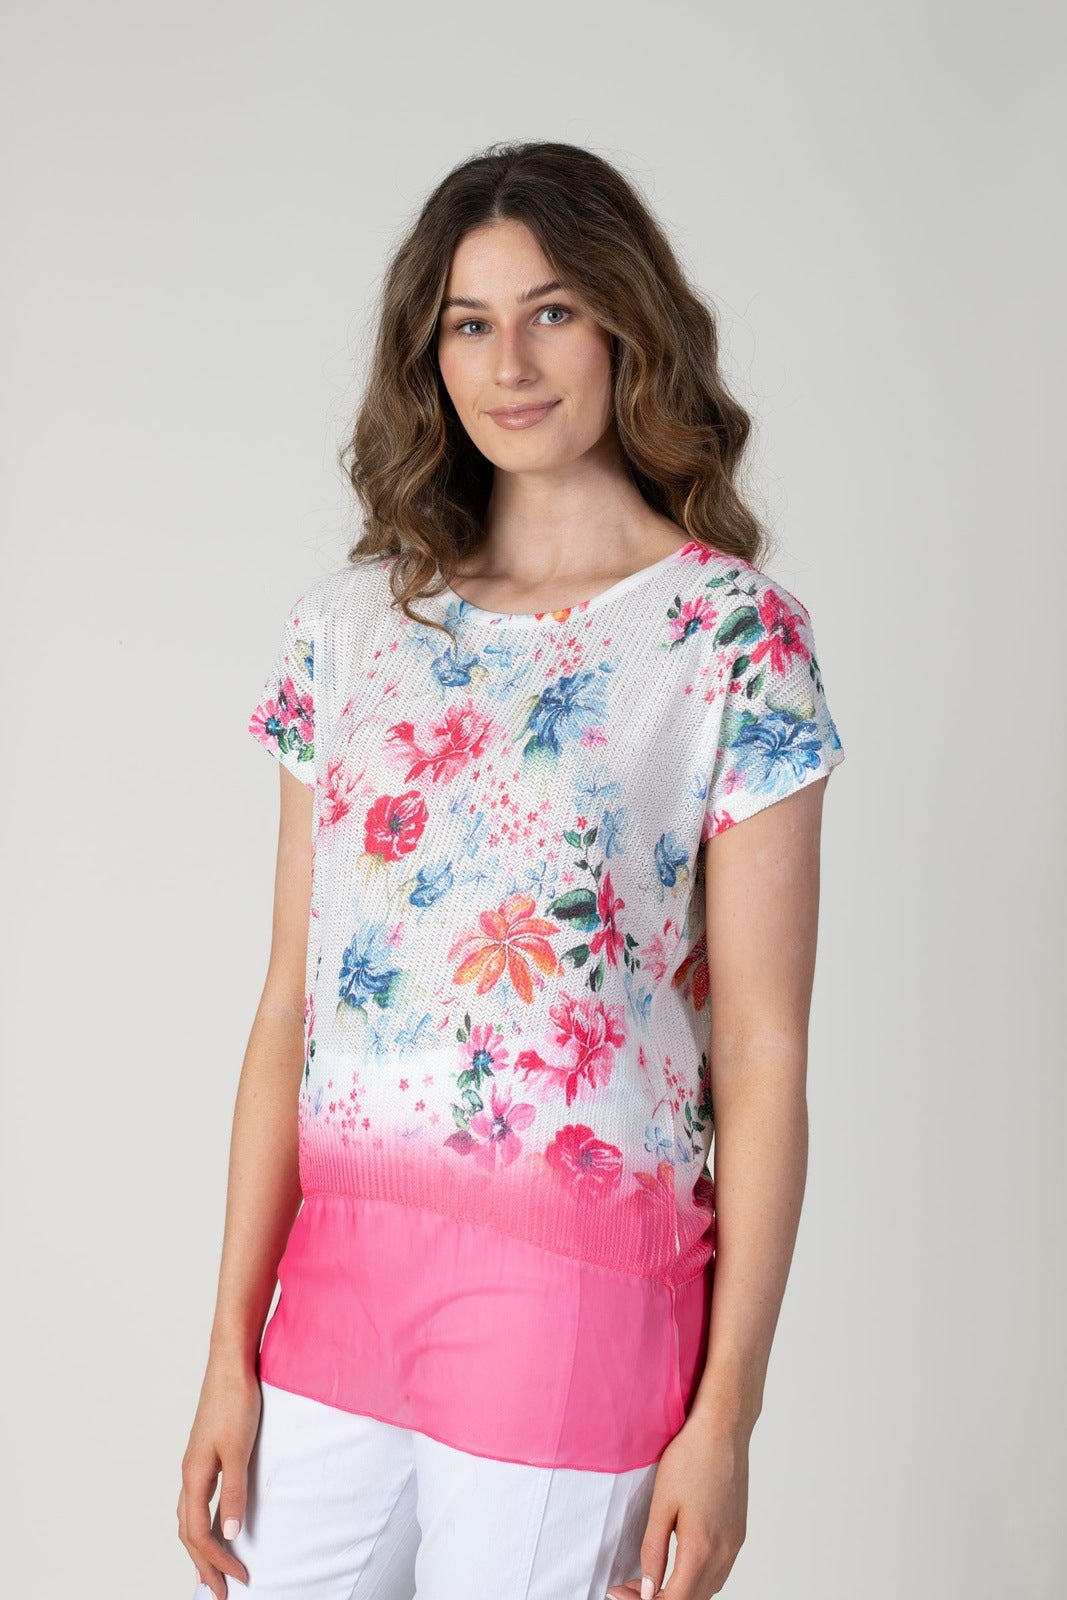 Tea Lane Floral Printed T-Shirt - Pink 1 Shaws Department Stores